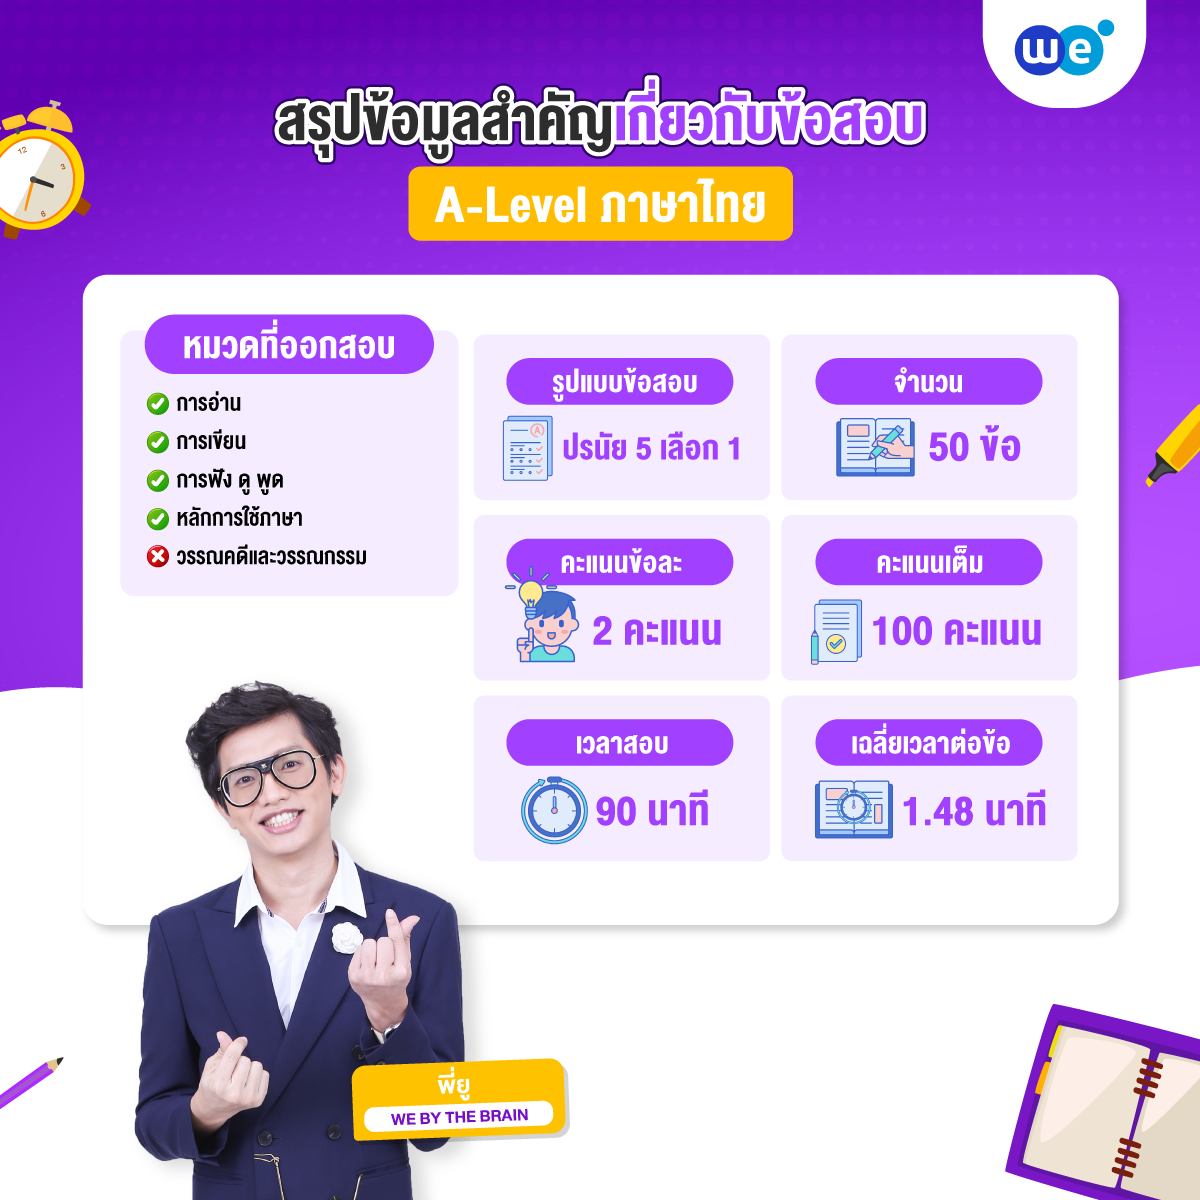 สรุปข้อมูลสำคัญเกี่ยวกับข้อสอบ A-Level ภาษาไทย